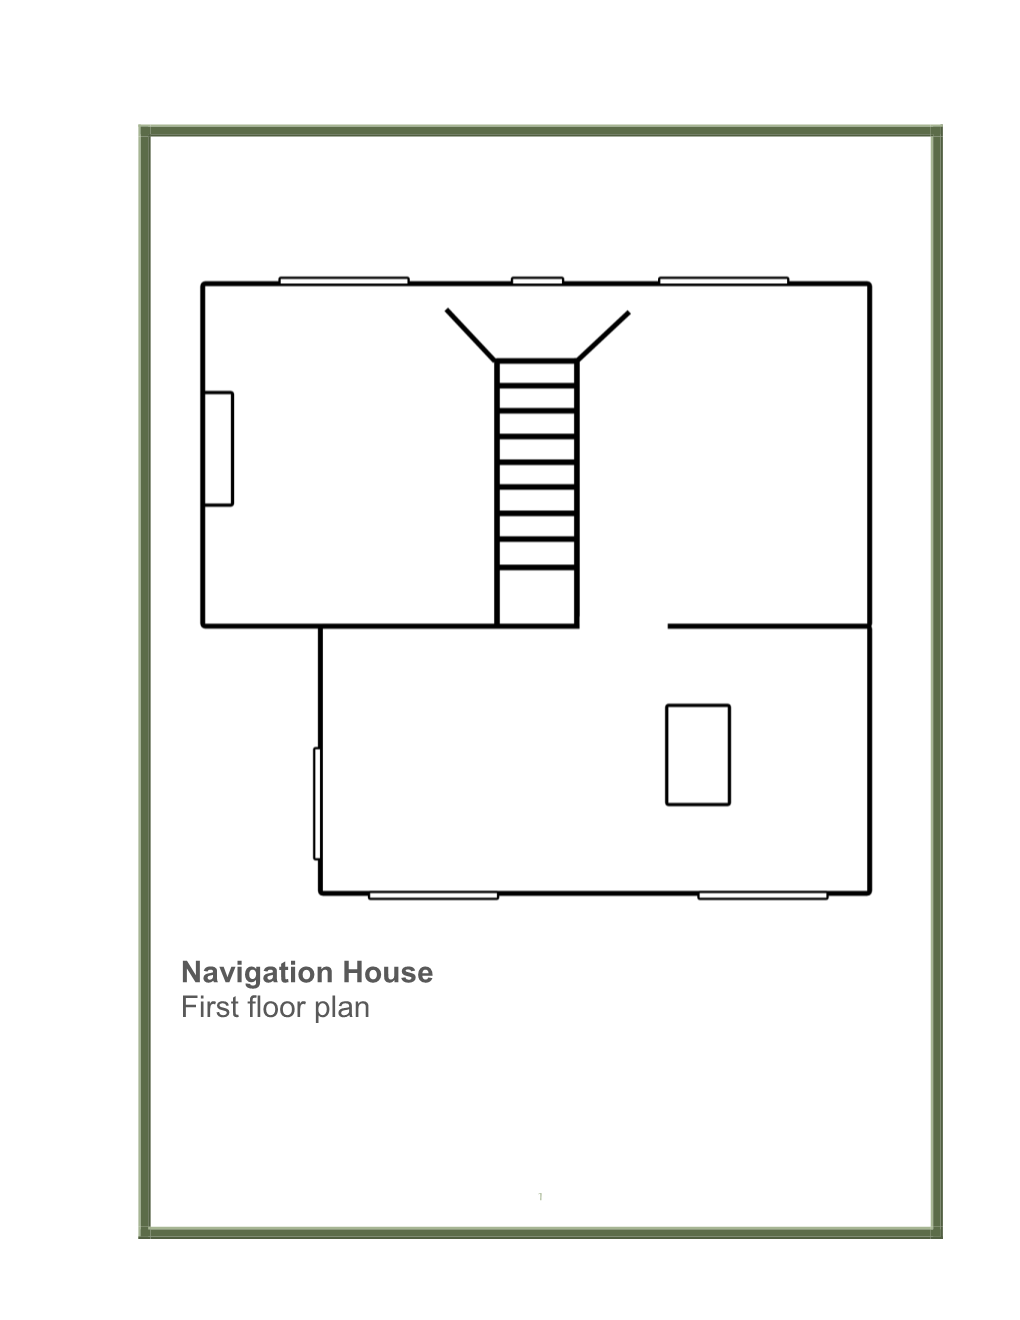 Navigation House First Floor Plan